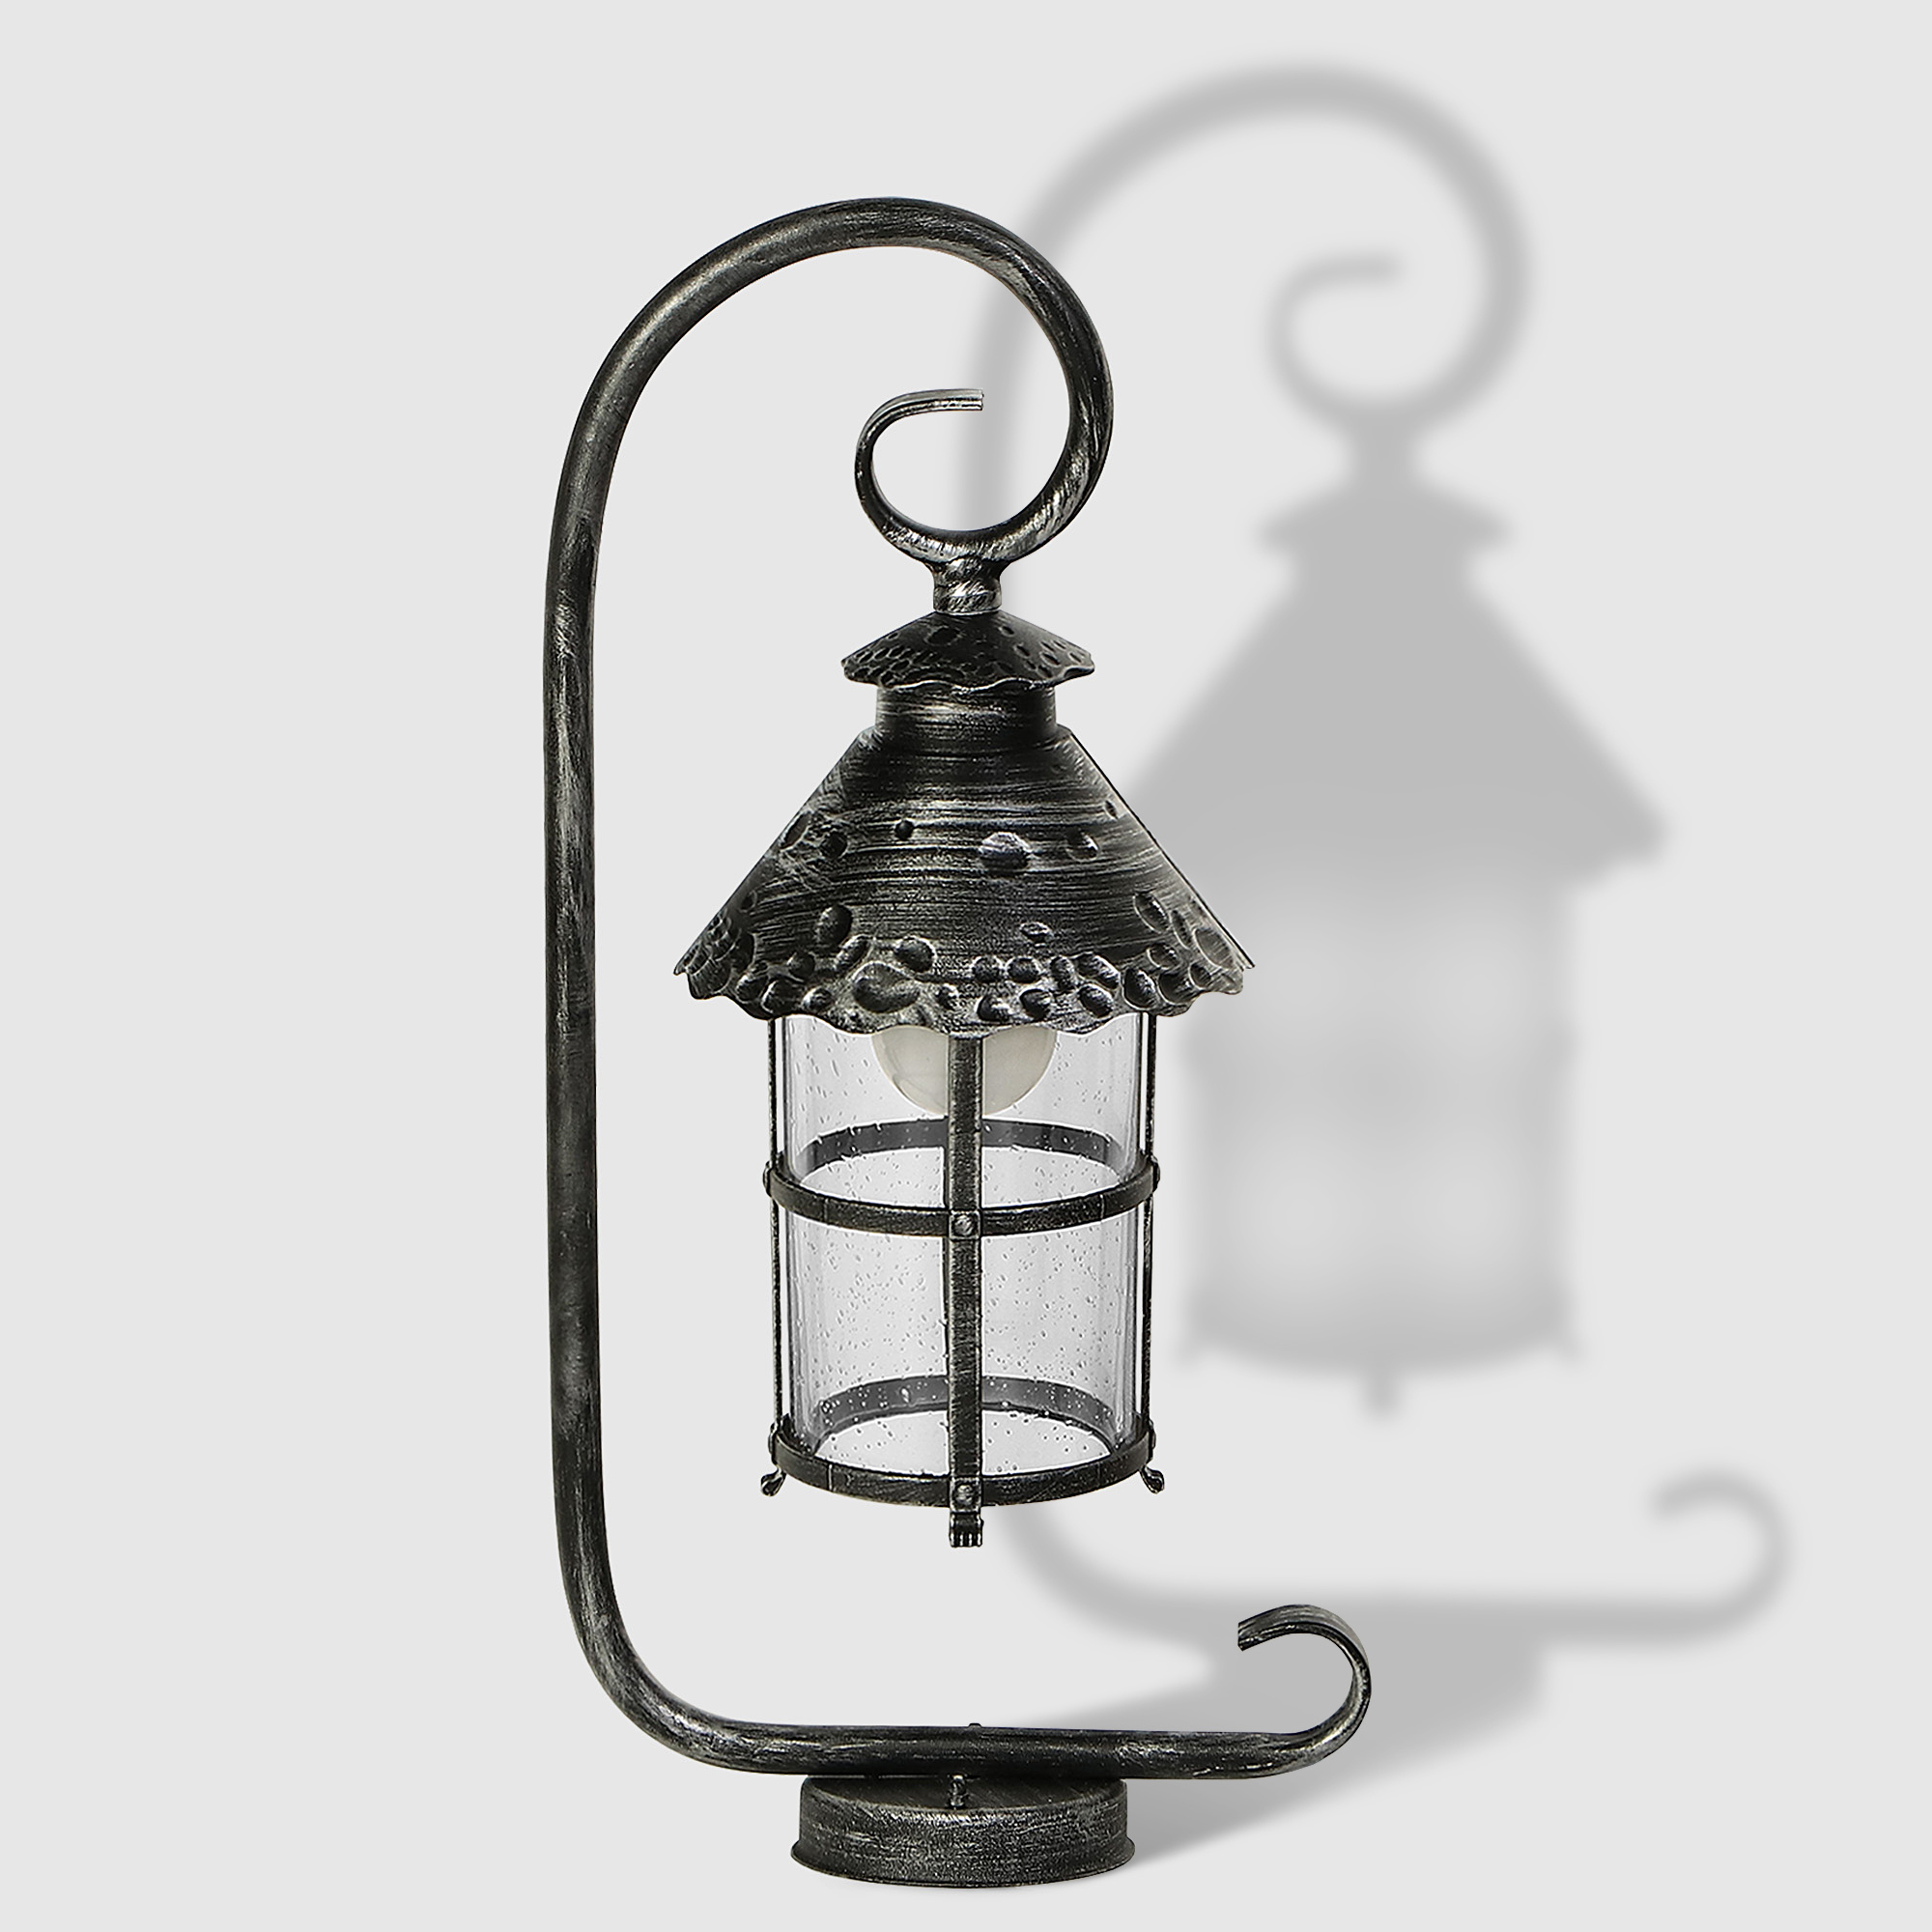 Светильник садовый Amber Lamp 8732B напольный IP23 E27 100Вт, чёрное серебро